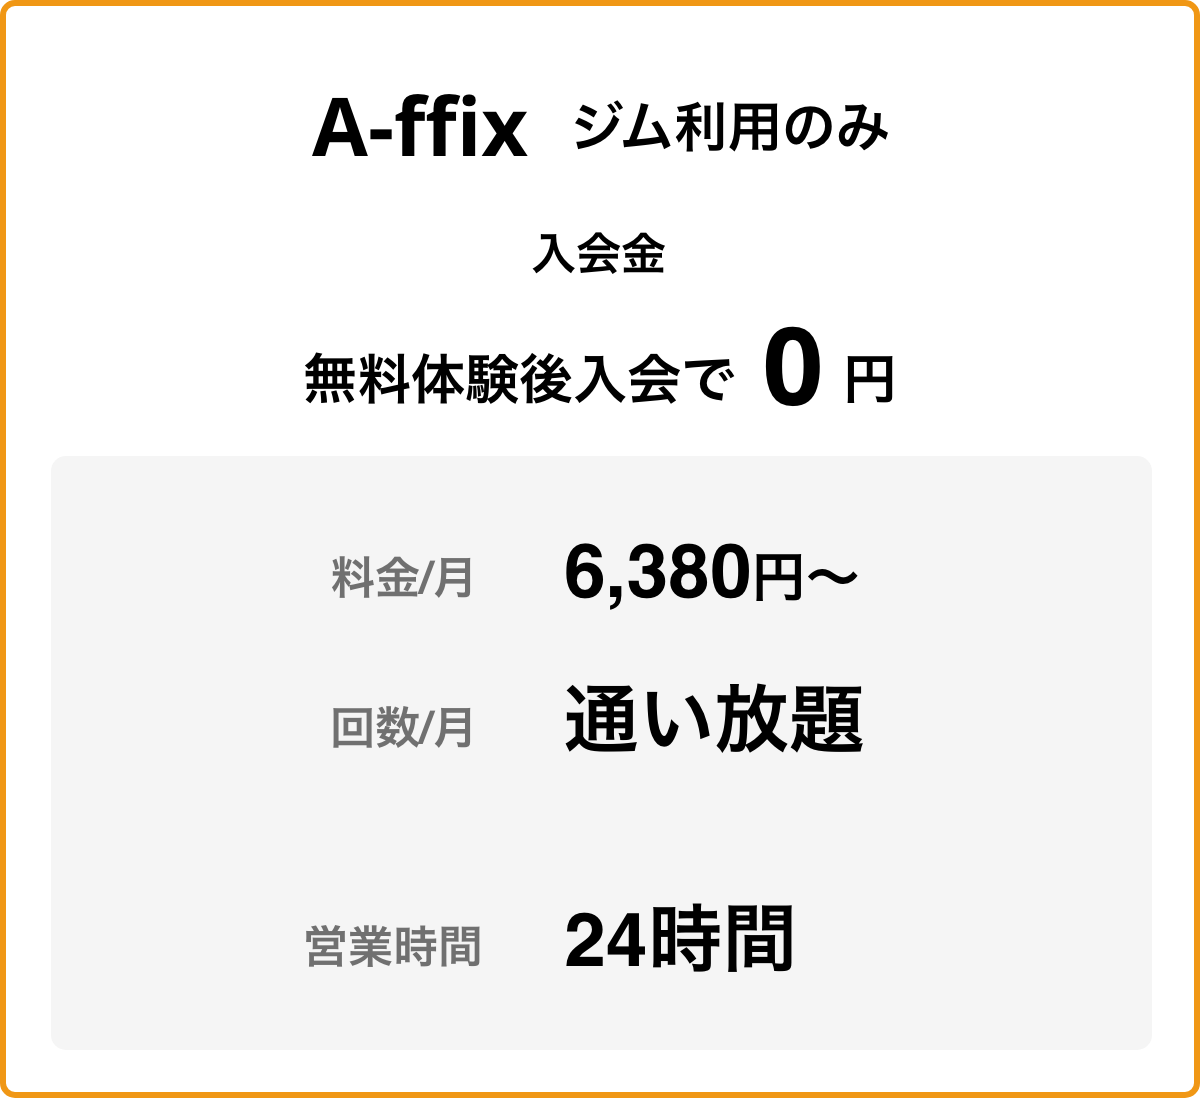 A-ffix ジム利用のみ